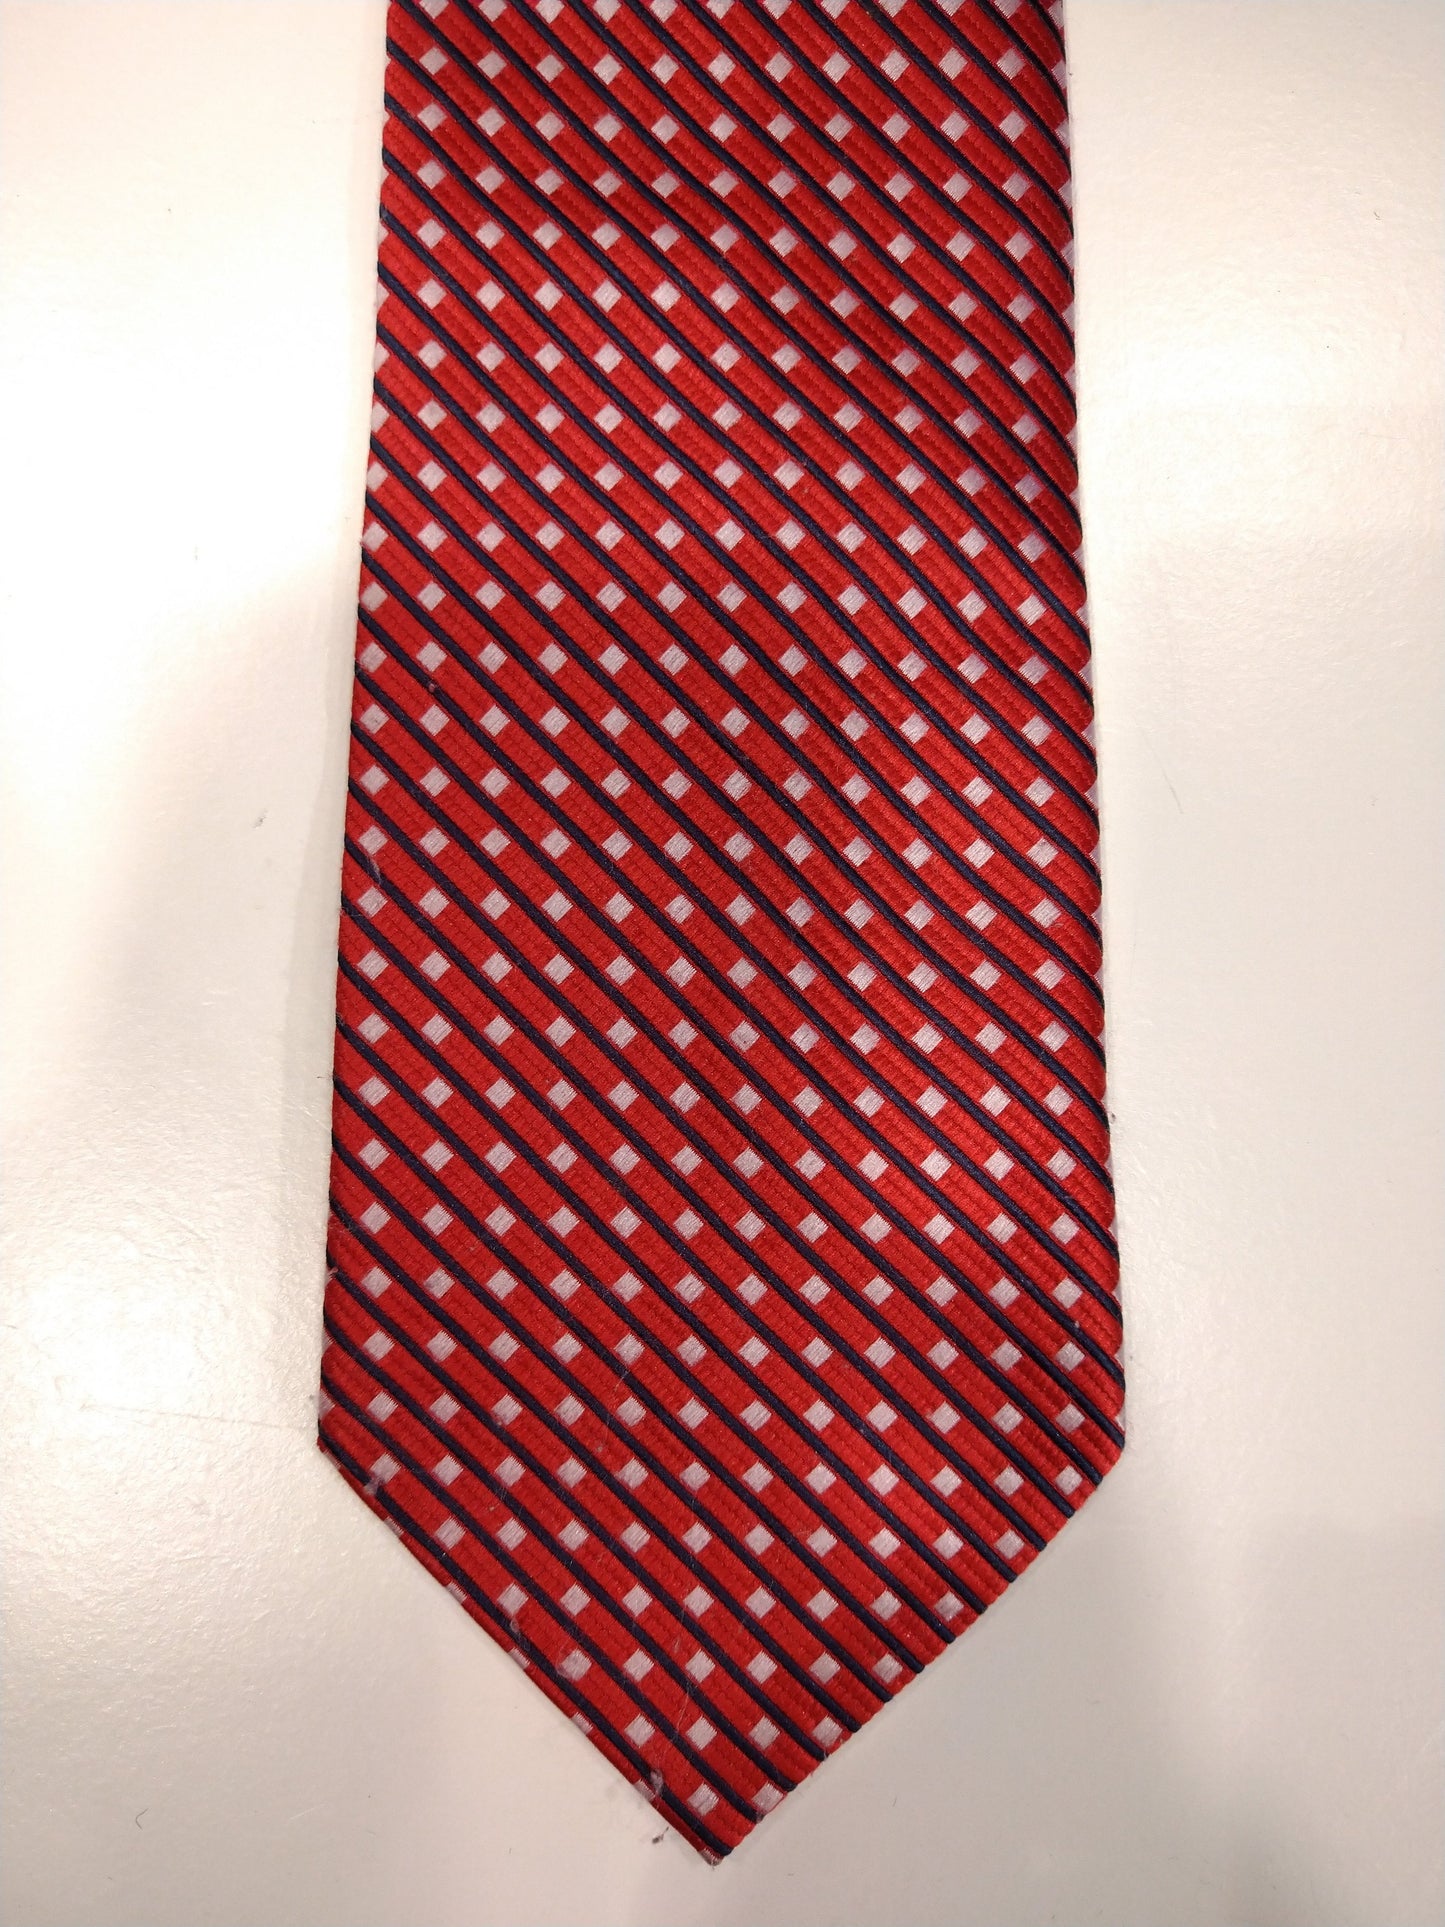 Cravate en soie vintage. Rouge avec motif de boules blanches.